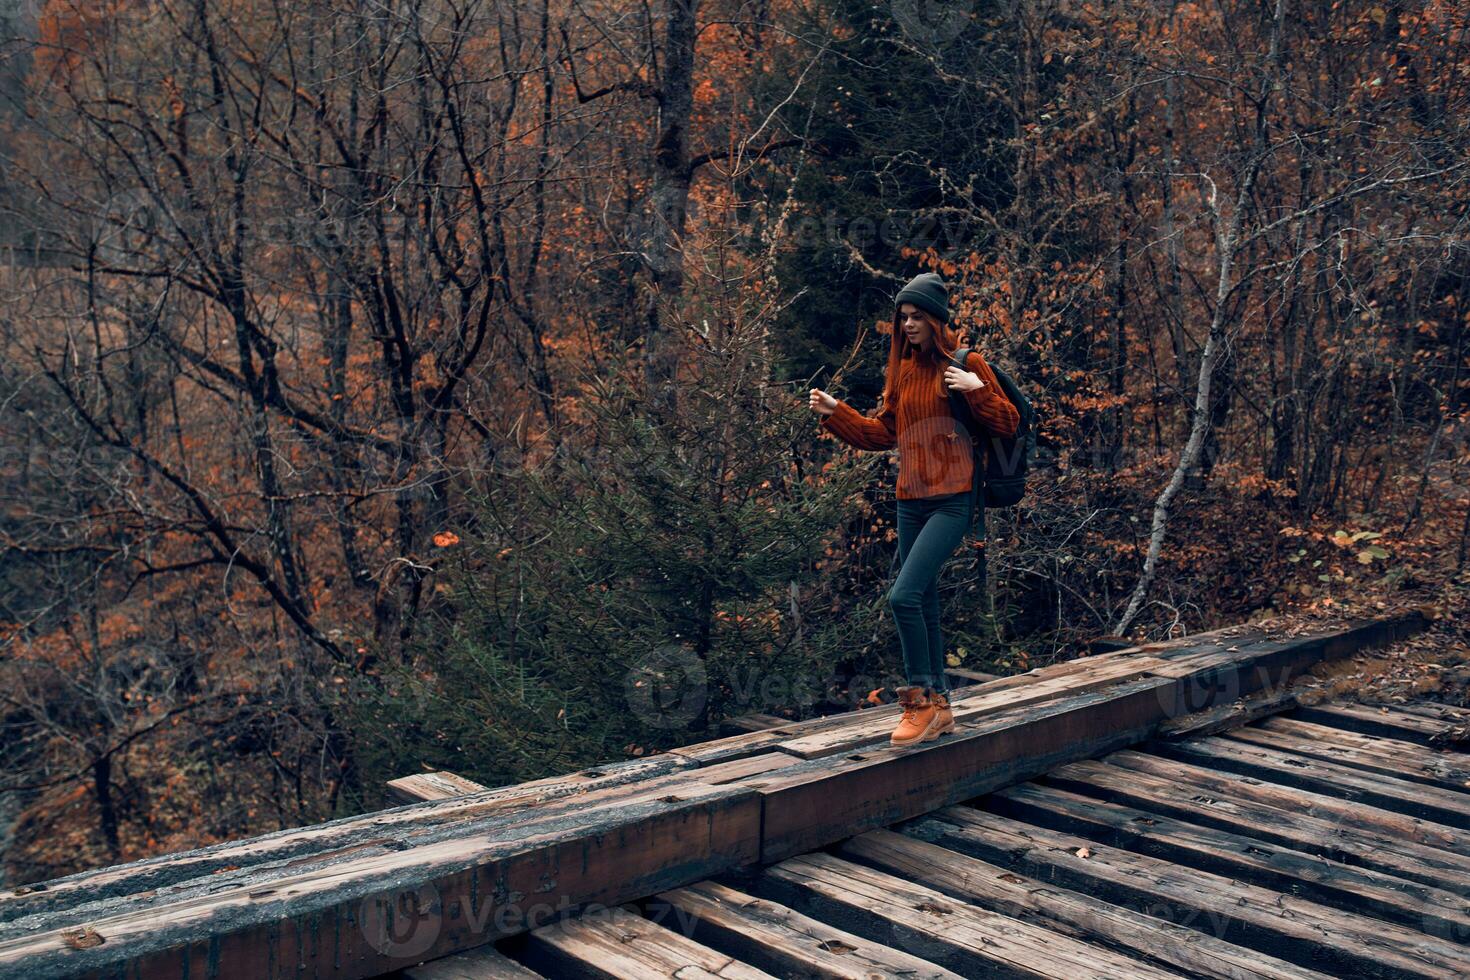 mujer turista cruces el puente terminado el río viaje en otoño foto